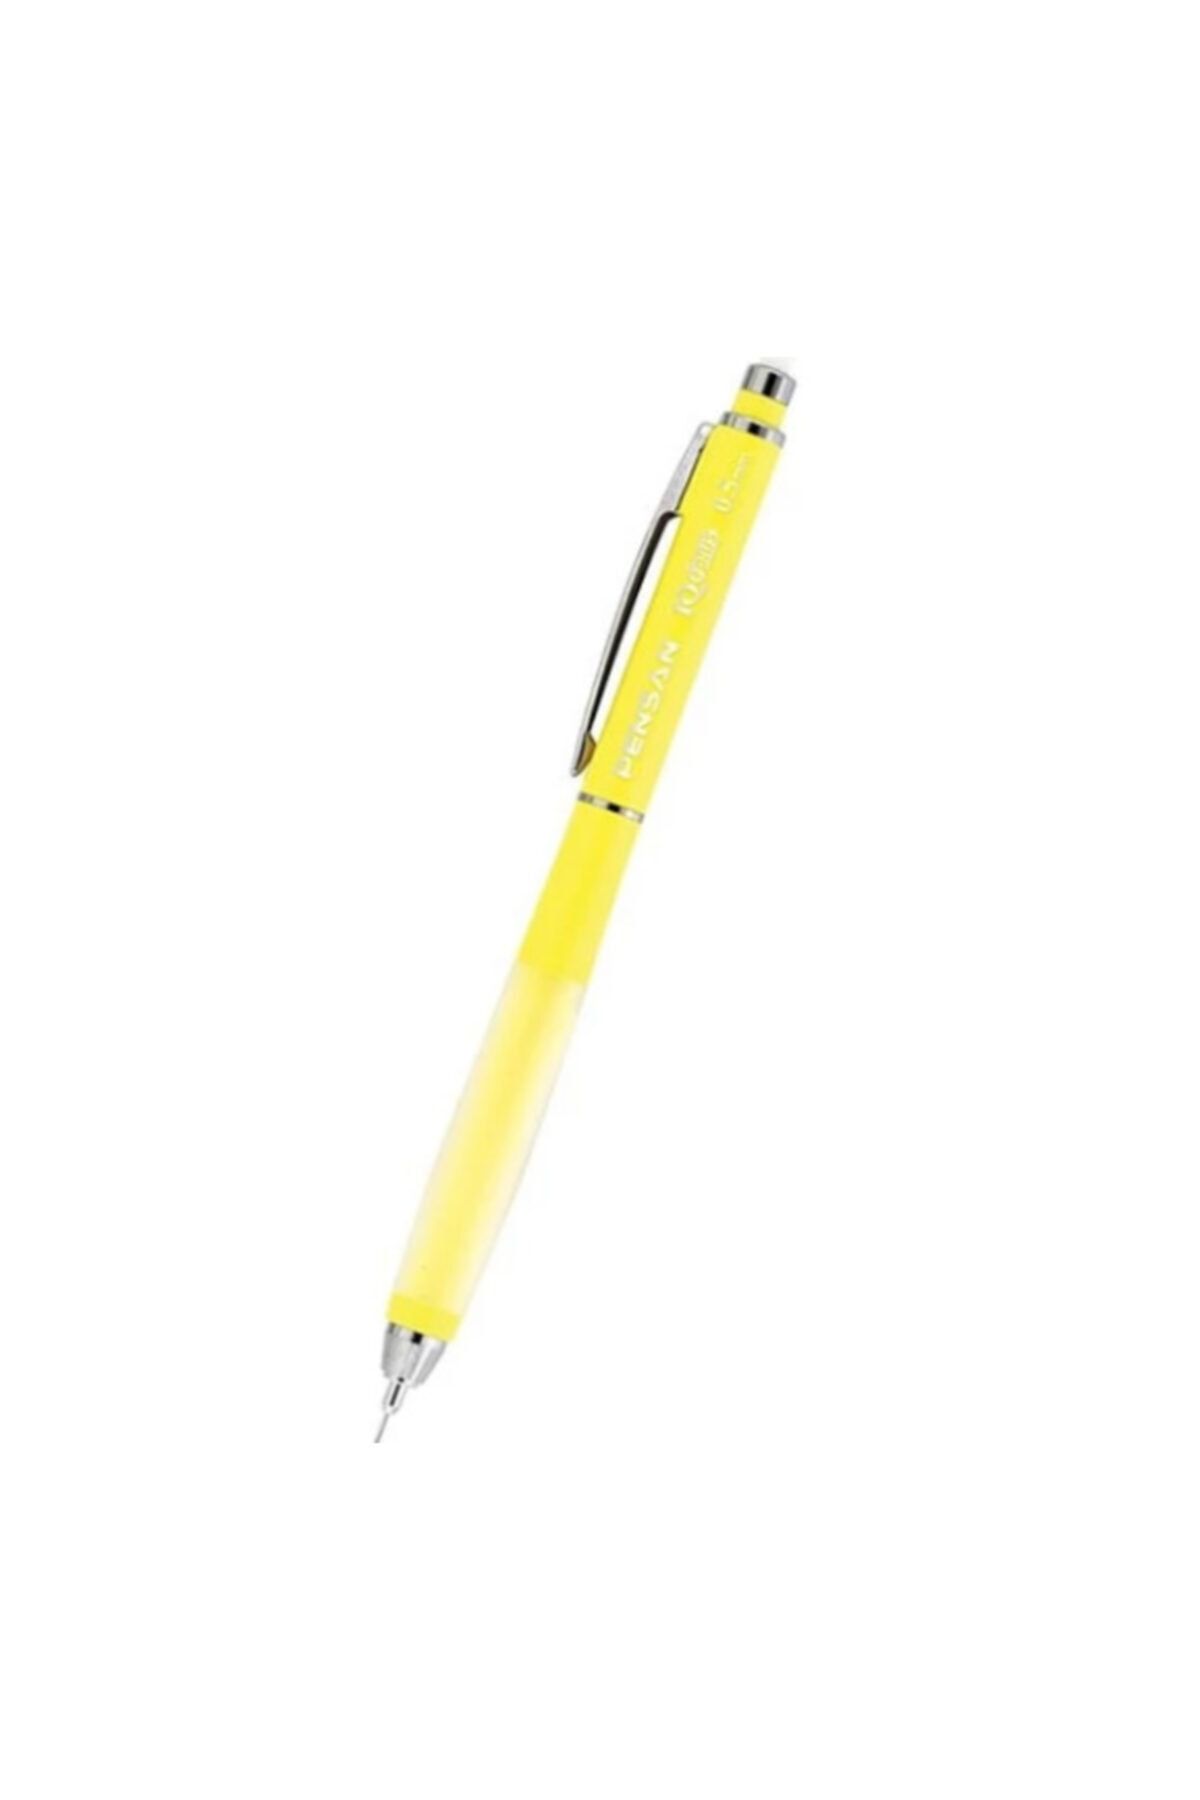 Pensan My-ıq Plus Versatil Kalem 0.5mn Sarı